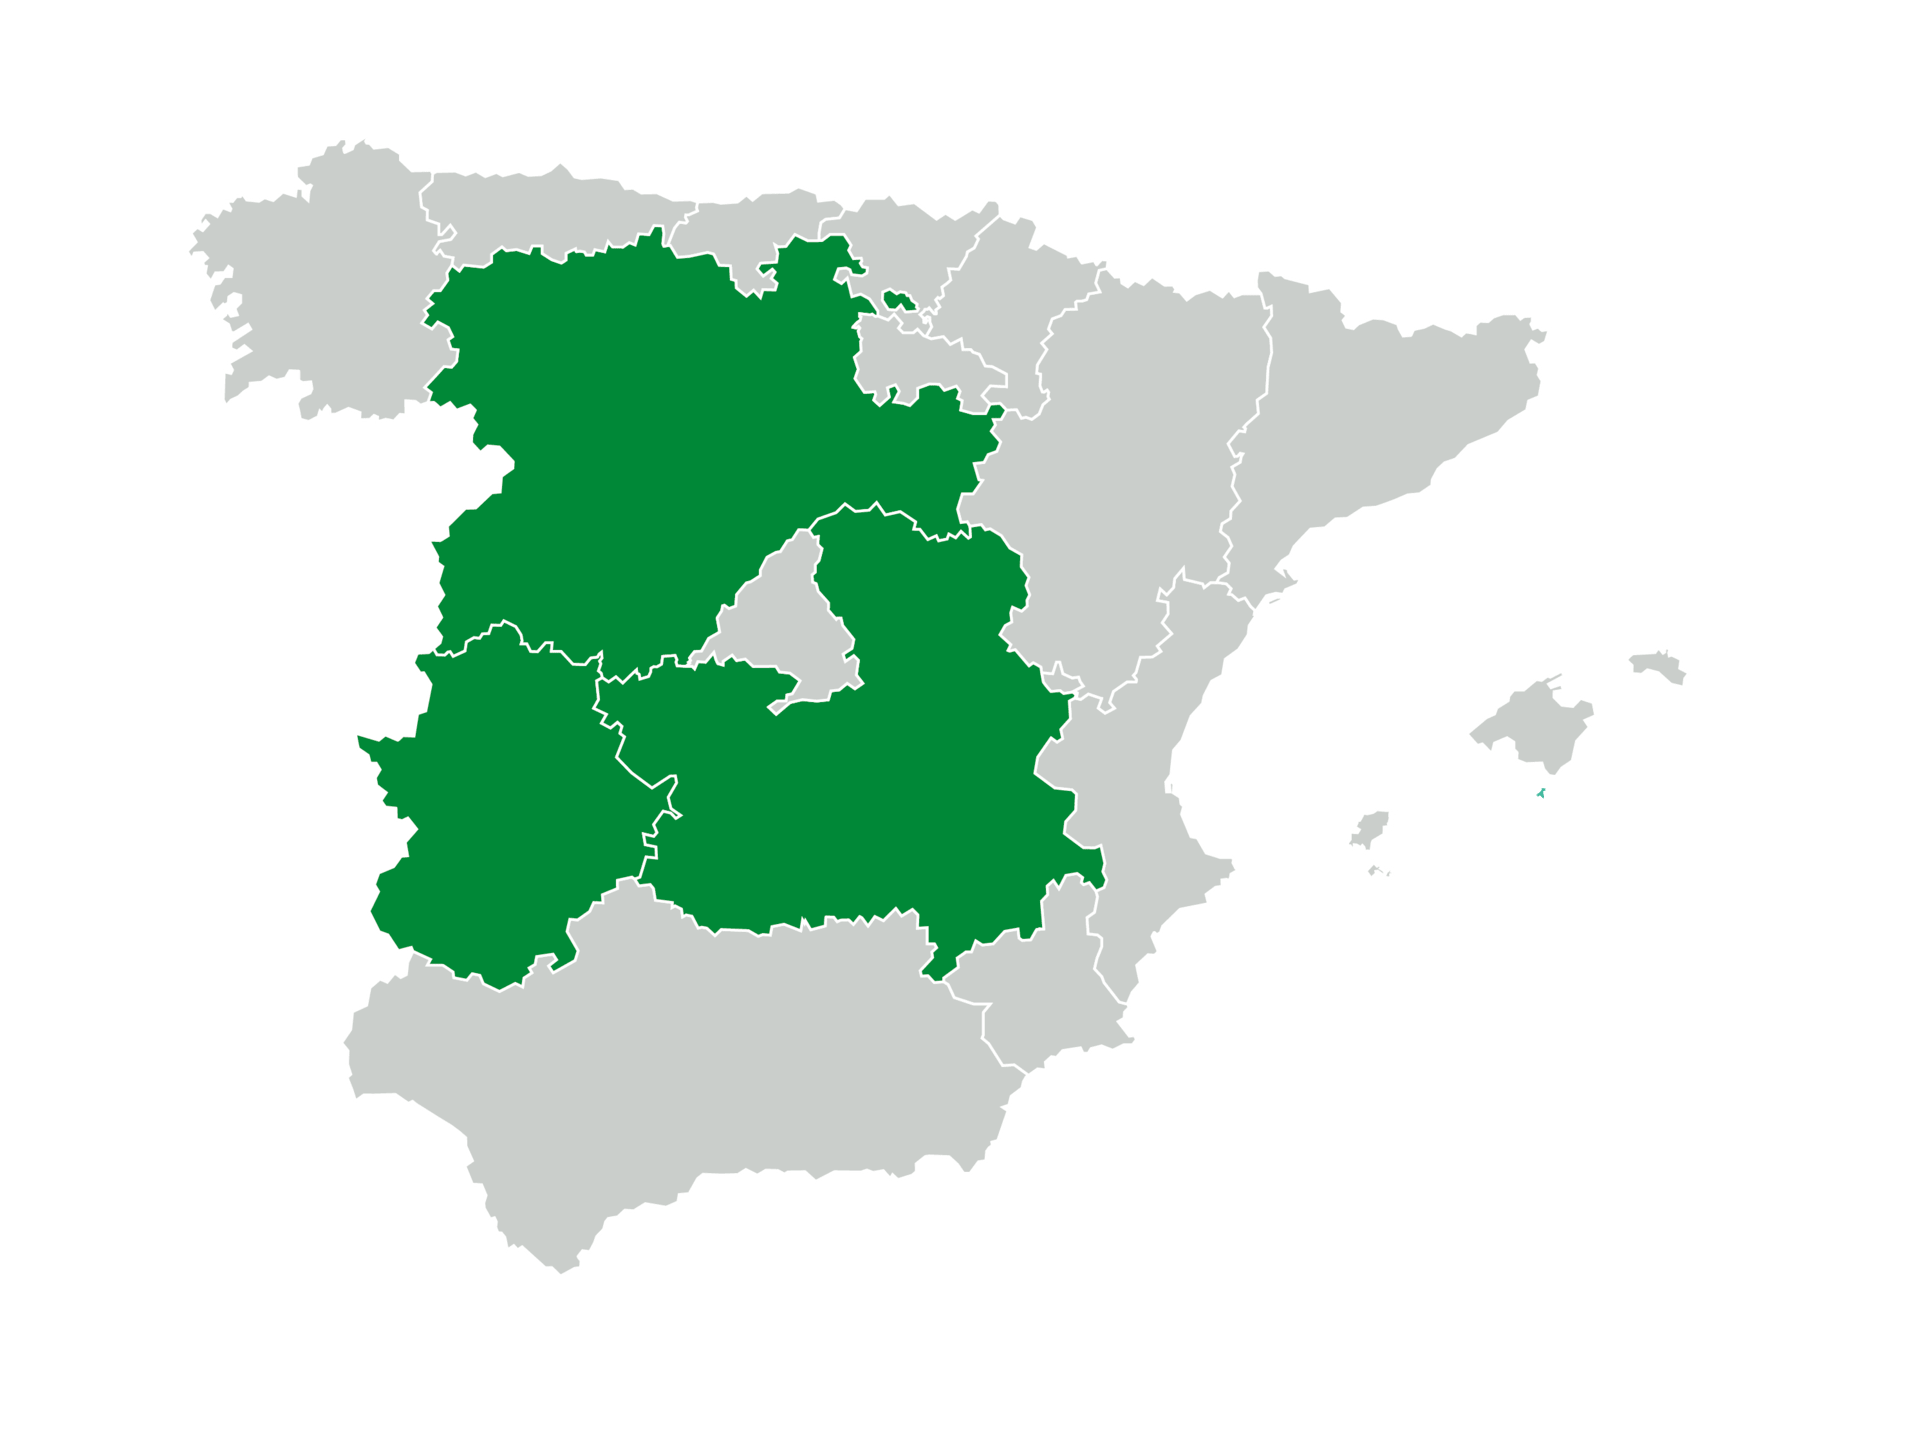 Mapa de España con Castilla y León, Castilla-La Mancha y Extremadura marcadas en verde